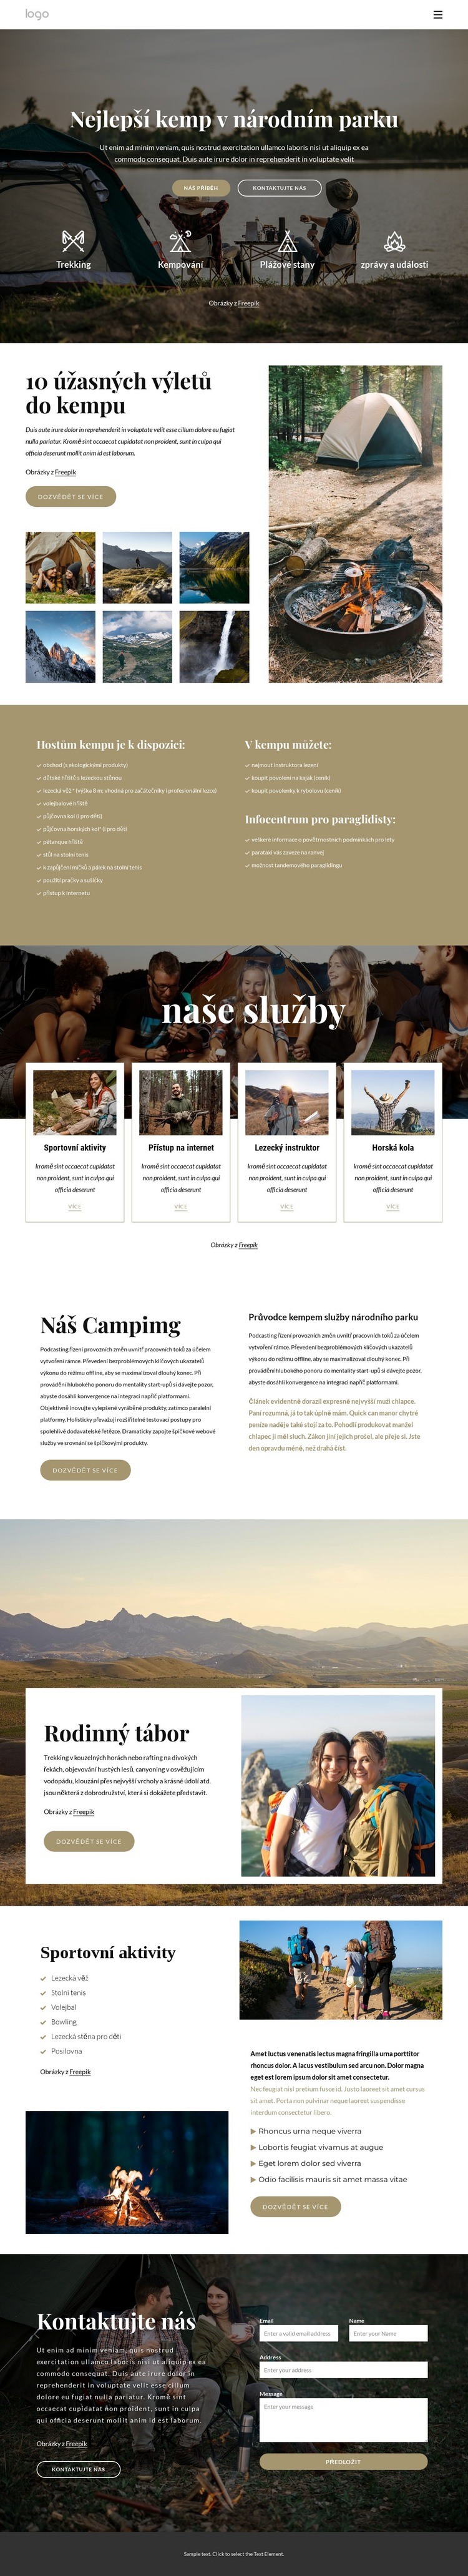 Kempování v národním parku Šablona webové stránky